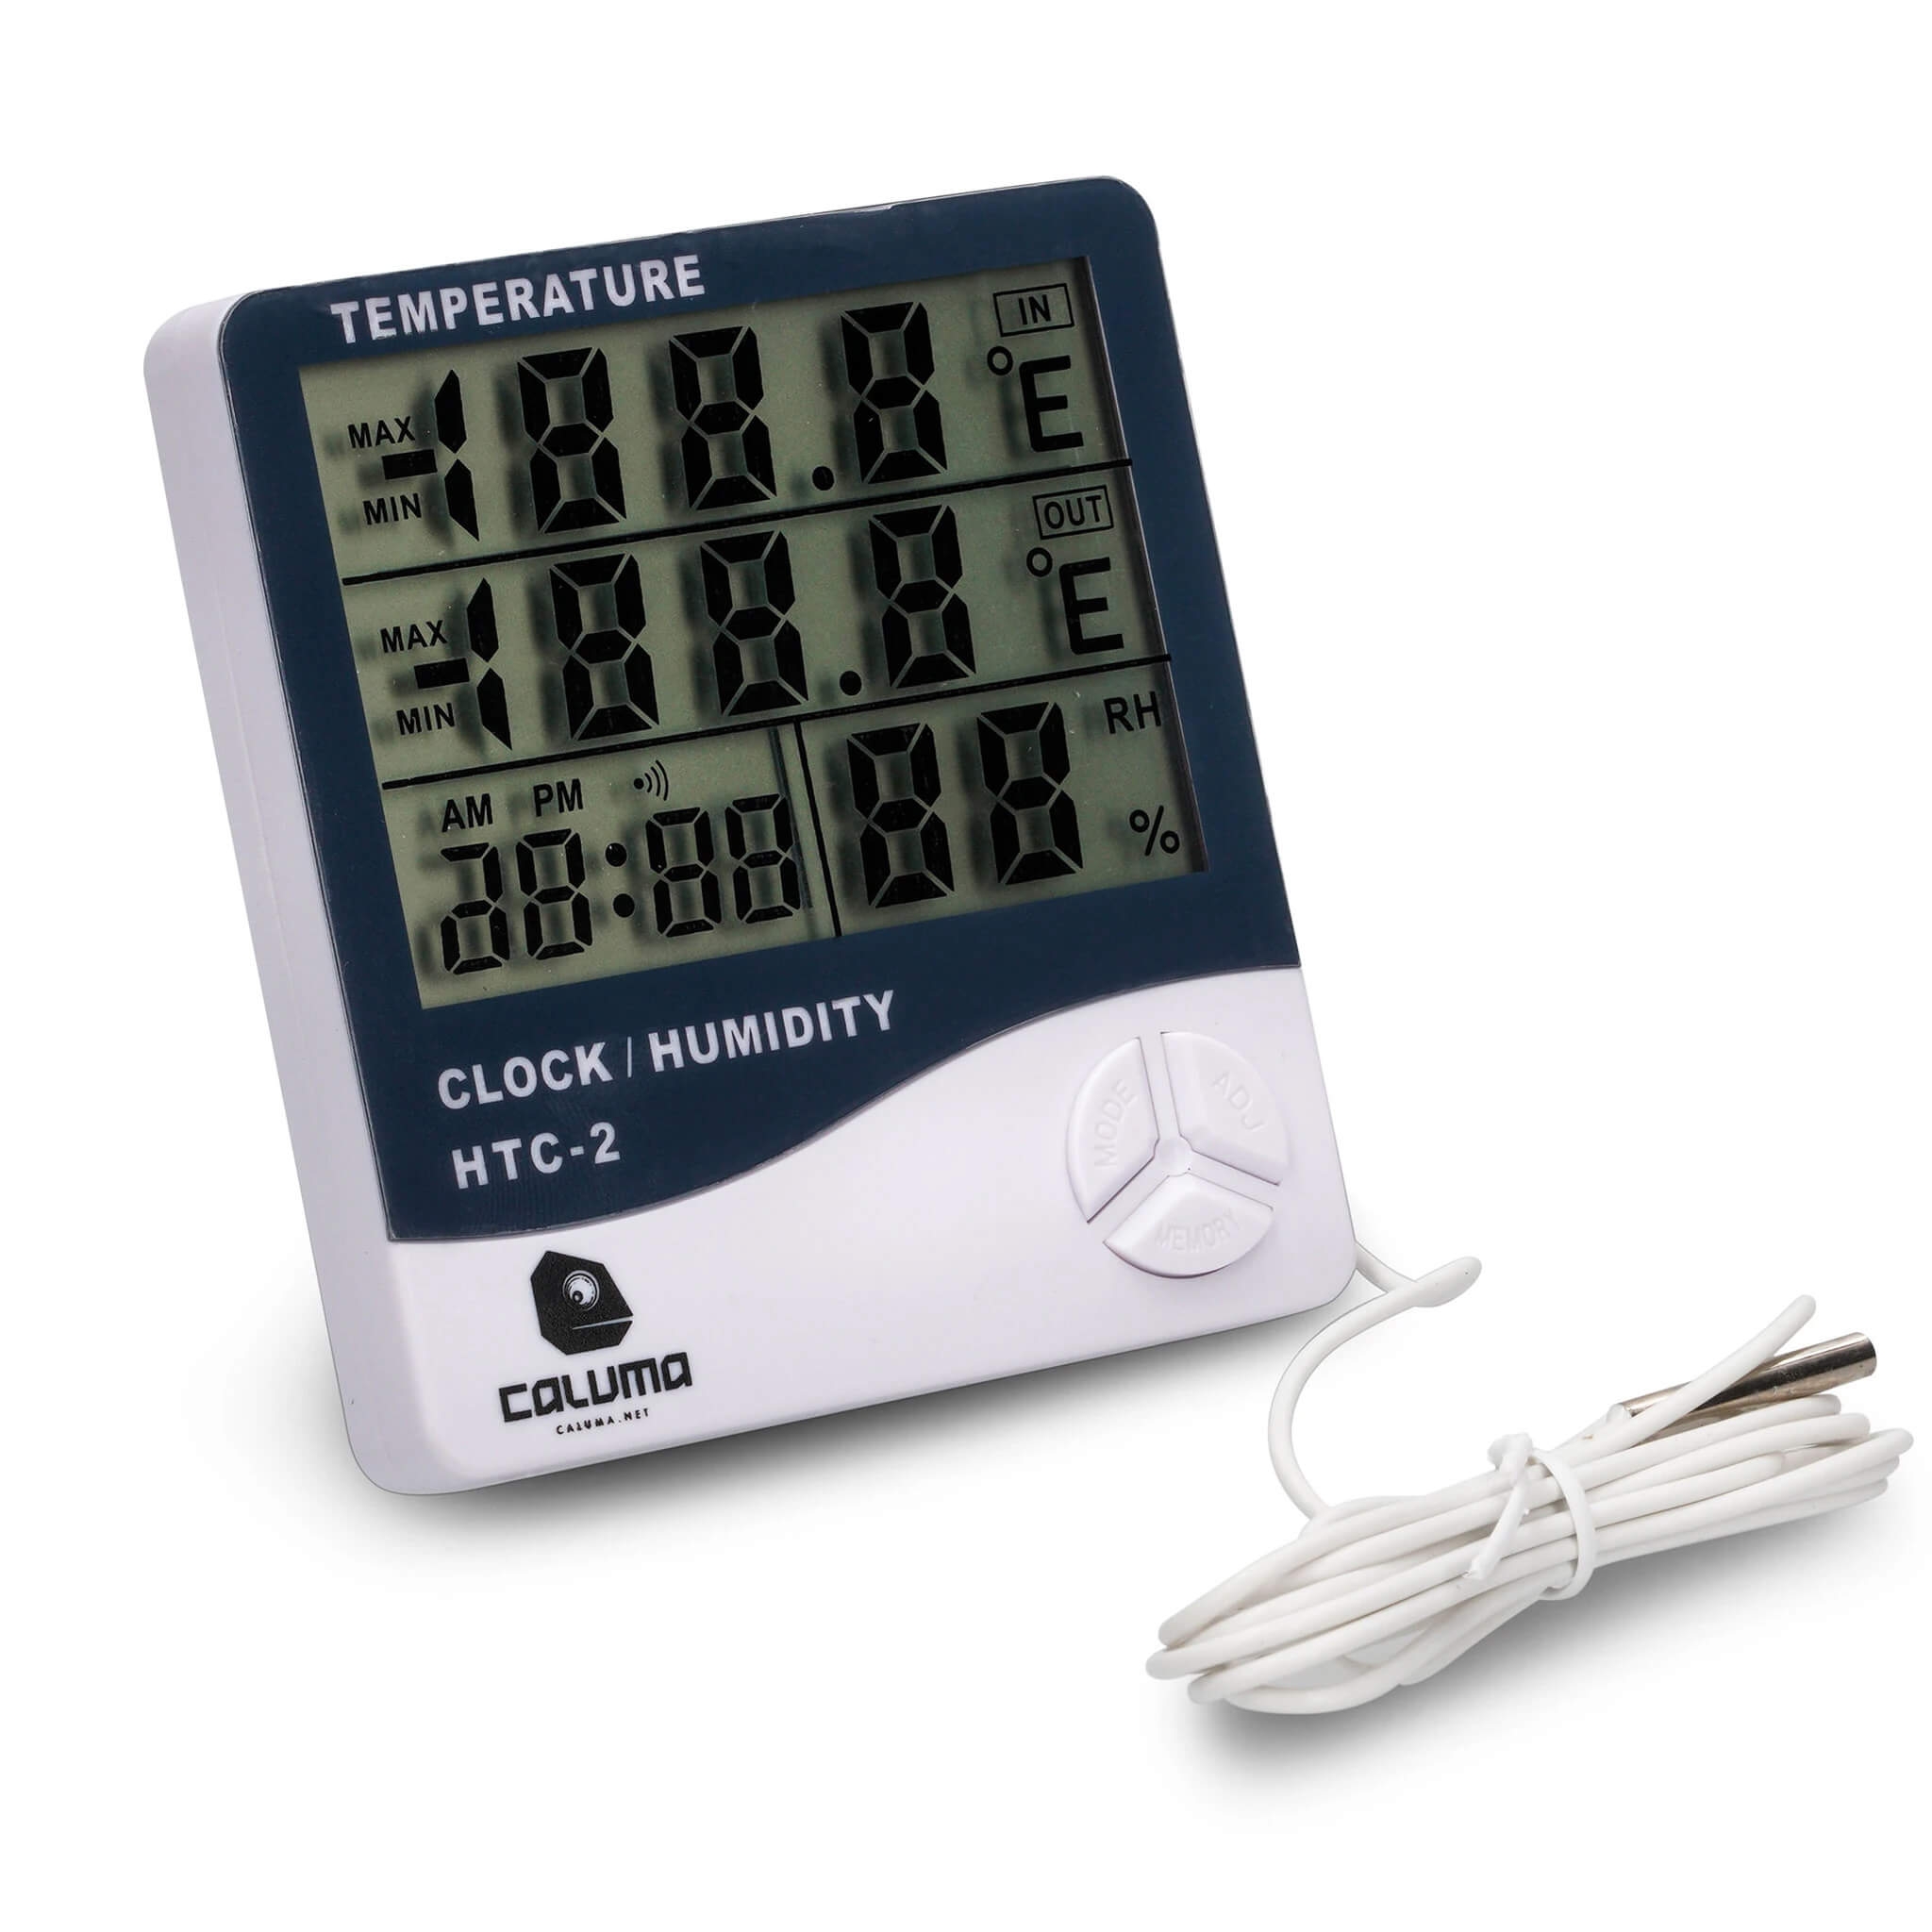 Caluma Temperatur- und Feuchtigkeitsmessgerät mit Uhr und Sonde